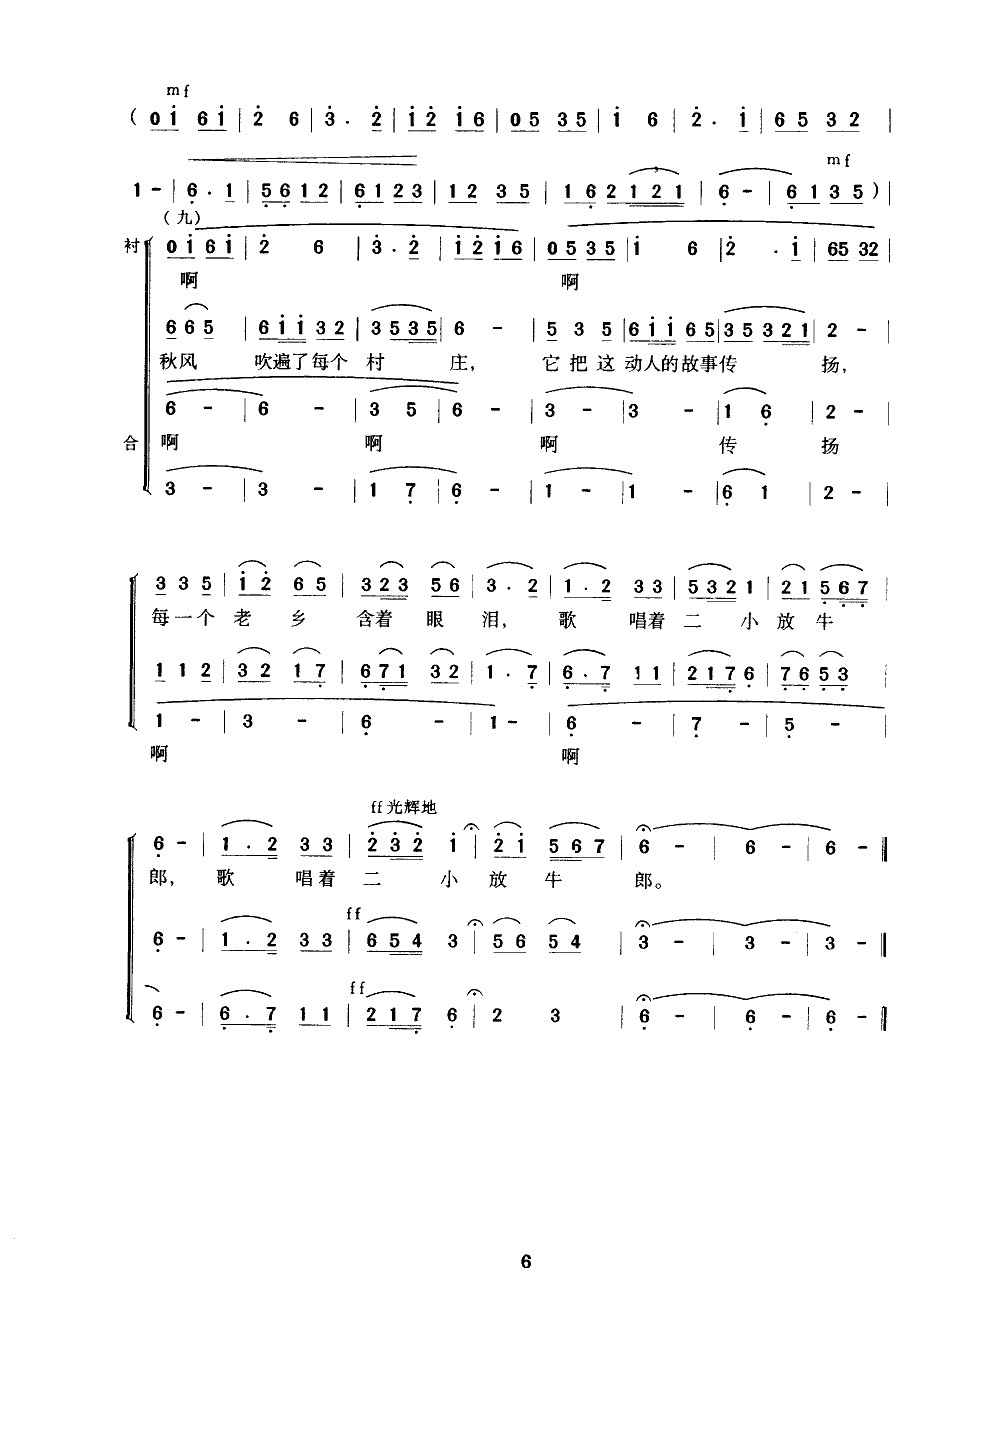 歌唱二小放牛郎(合唱、钟维国改编)合唱曲谱（图6）